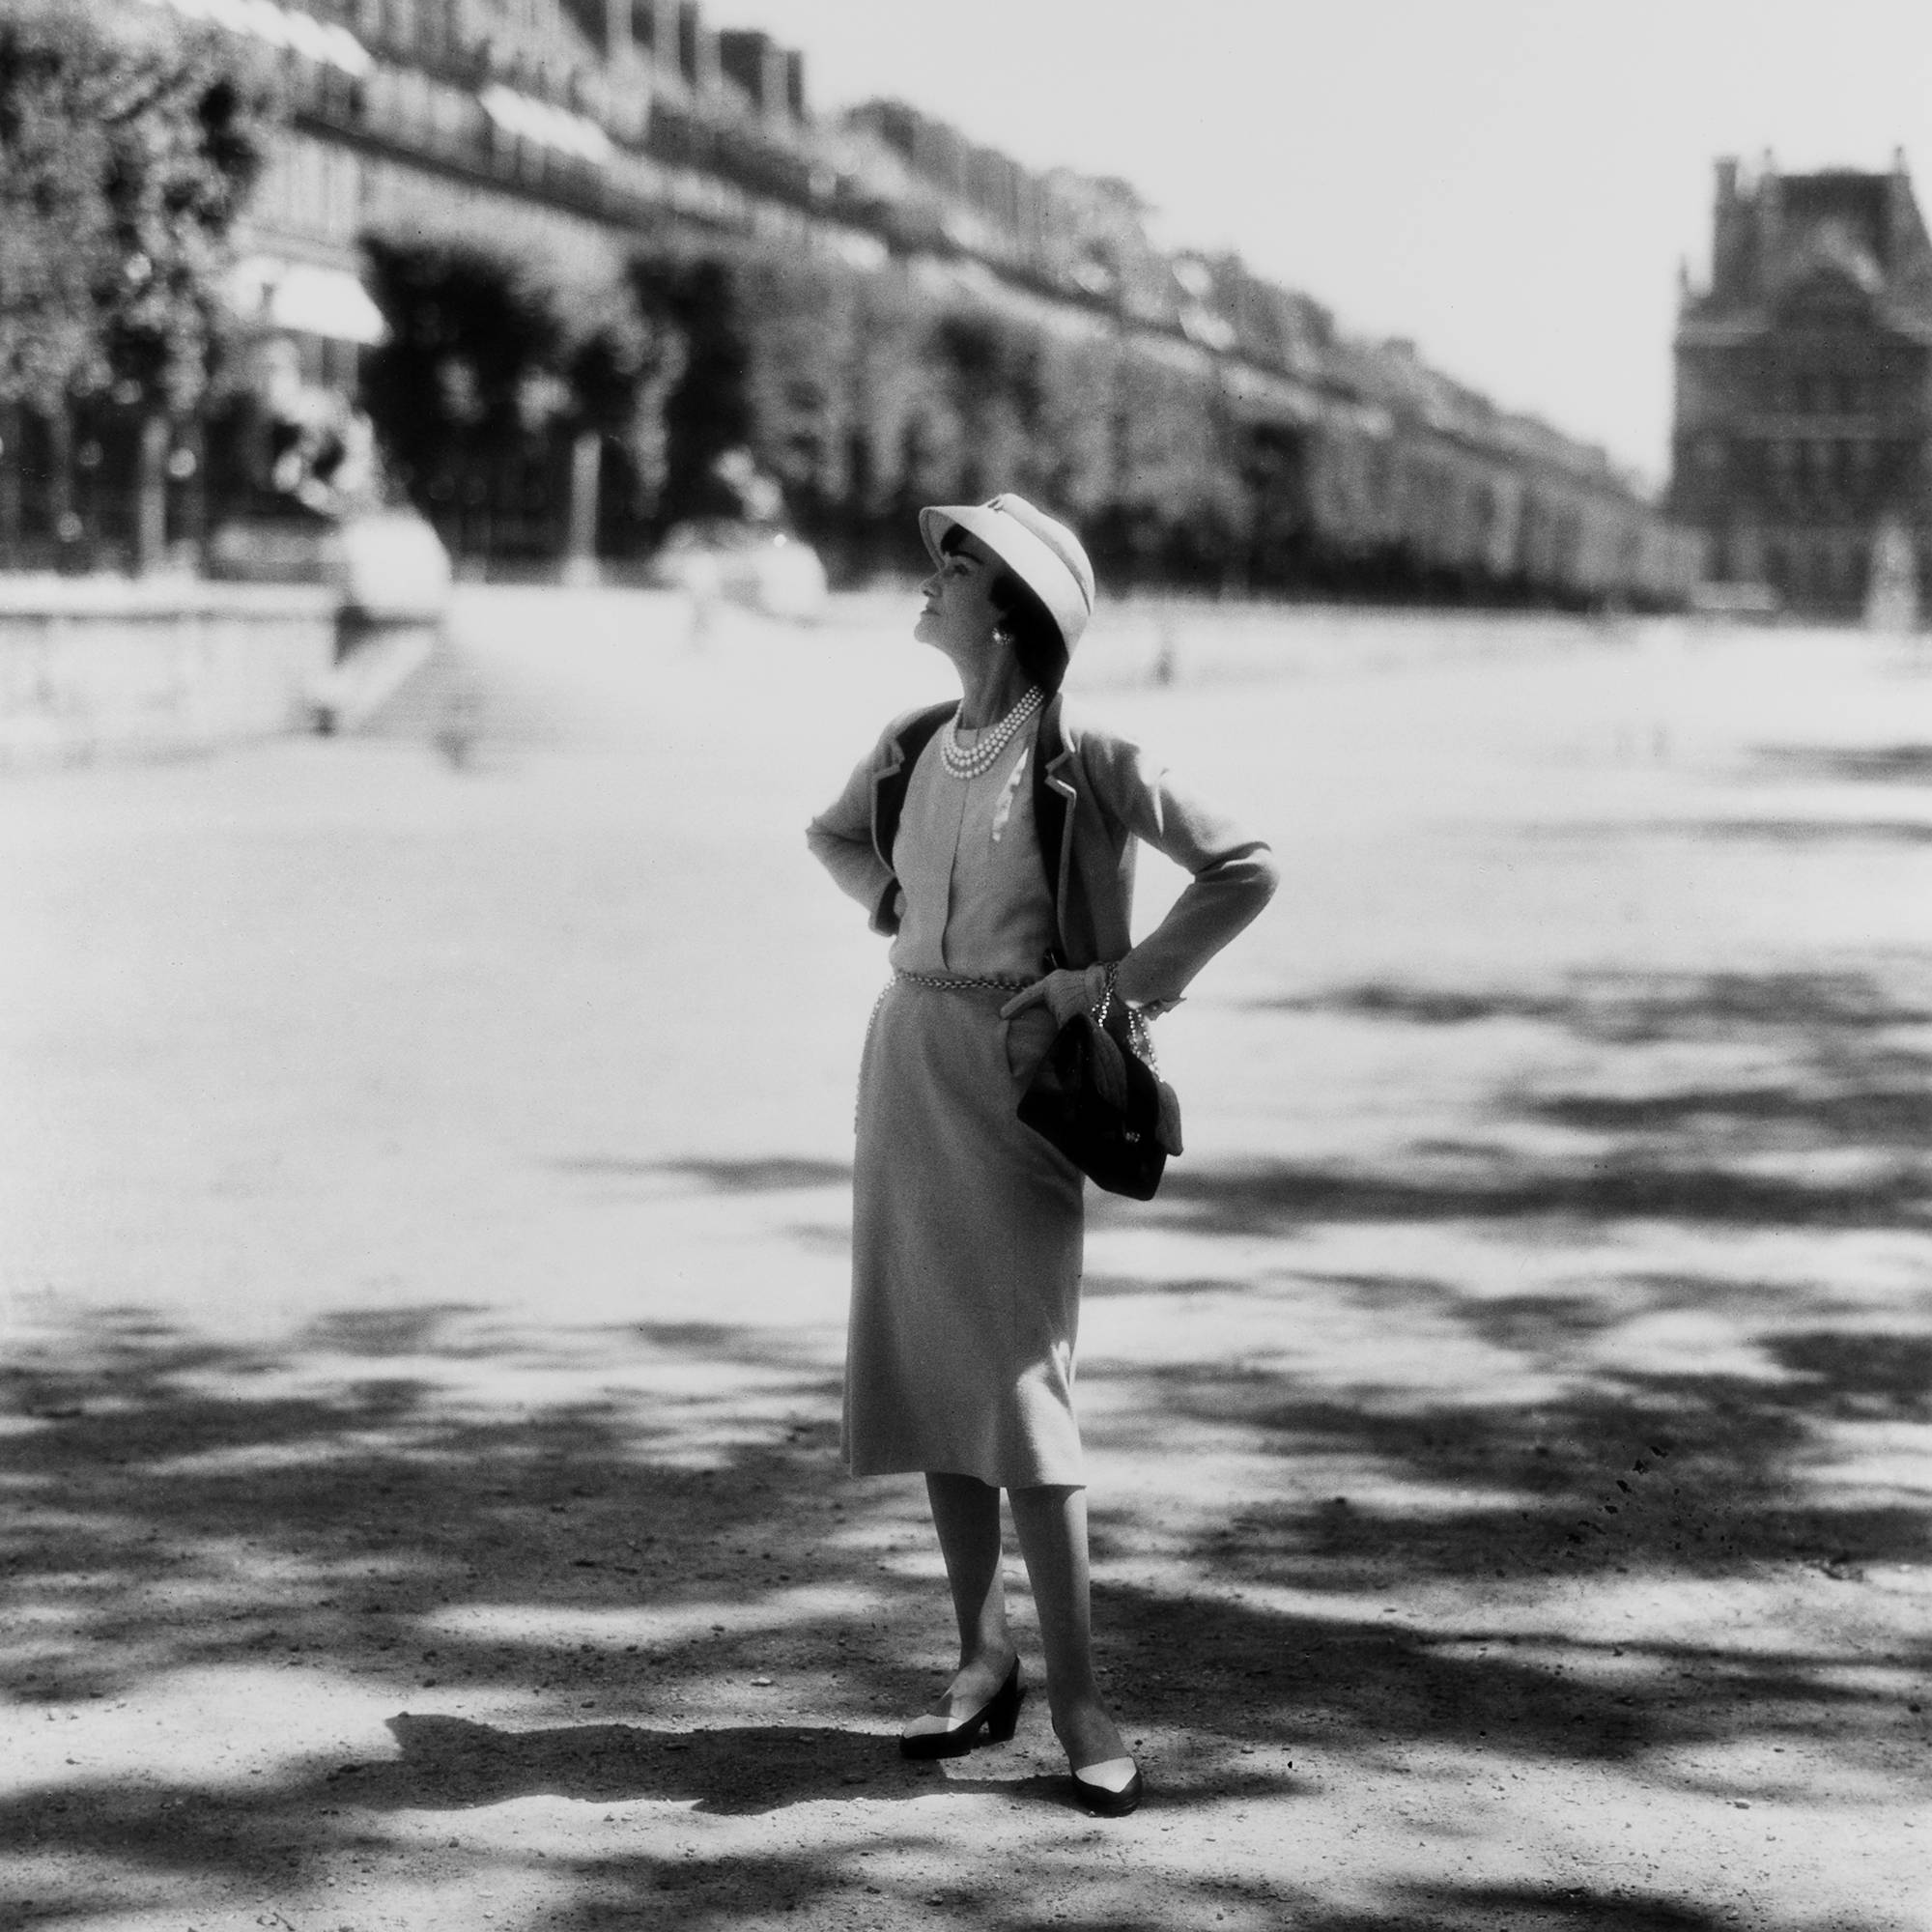 O ano é 1960. Mademoiselle Chanel posa no Jardin des Tuileries, em Paris, com o acessório que ela mesma criou (e que entraria para a história): a bolsa 2.55